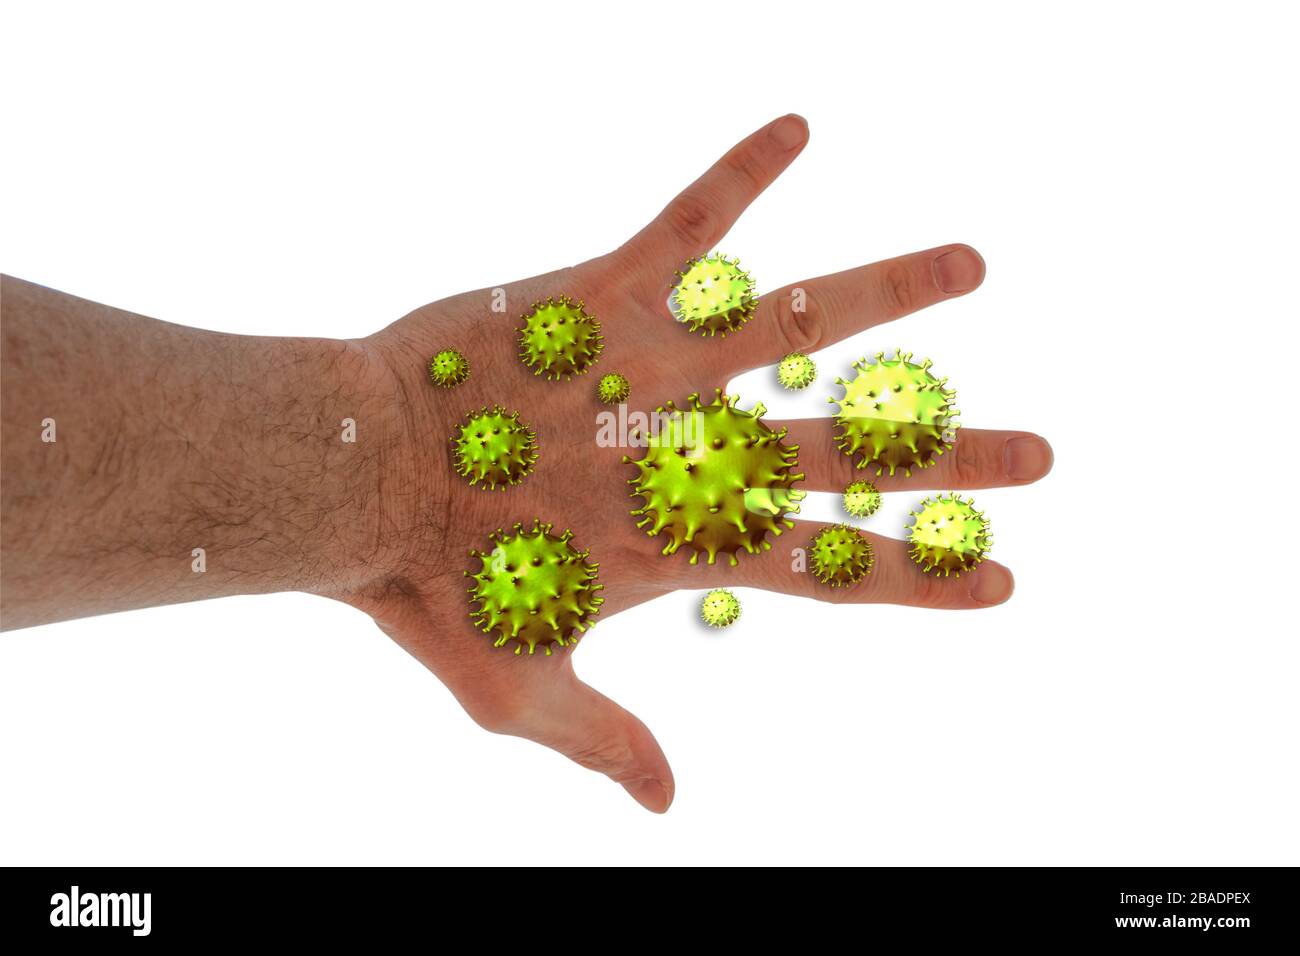 Dettagli della mano maschile con cellule di virus 2019-nCoV o Covid 19-NCP sopra, isolate su sfondo bianco. Concetto di contaminazione. Le mani sono le principali Foto Stock